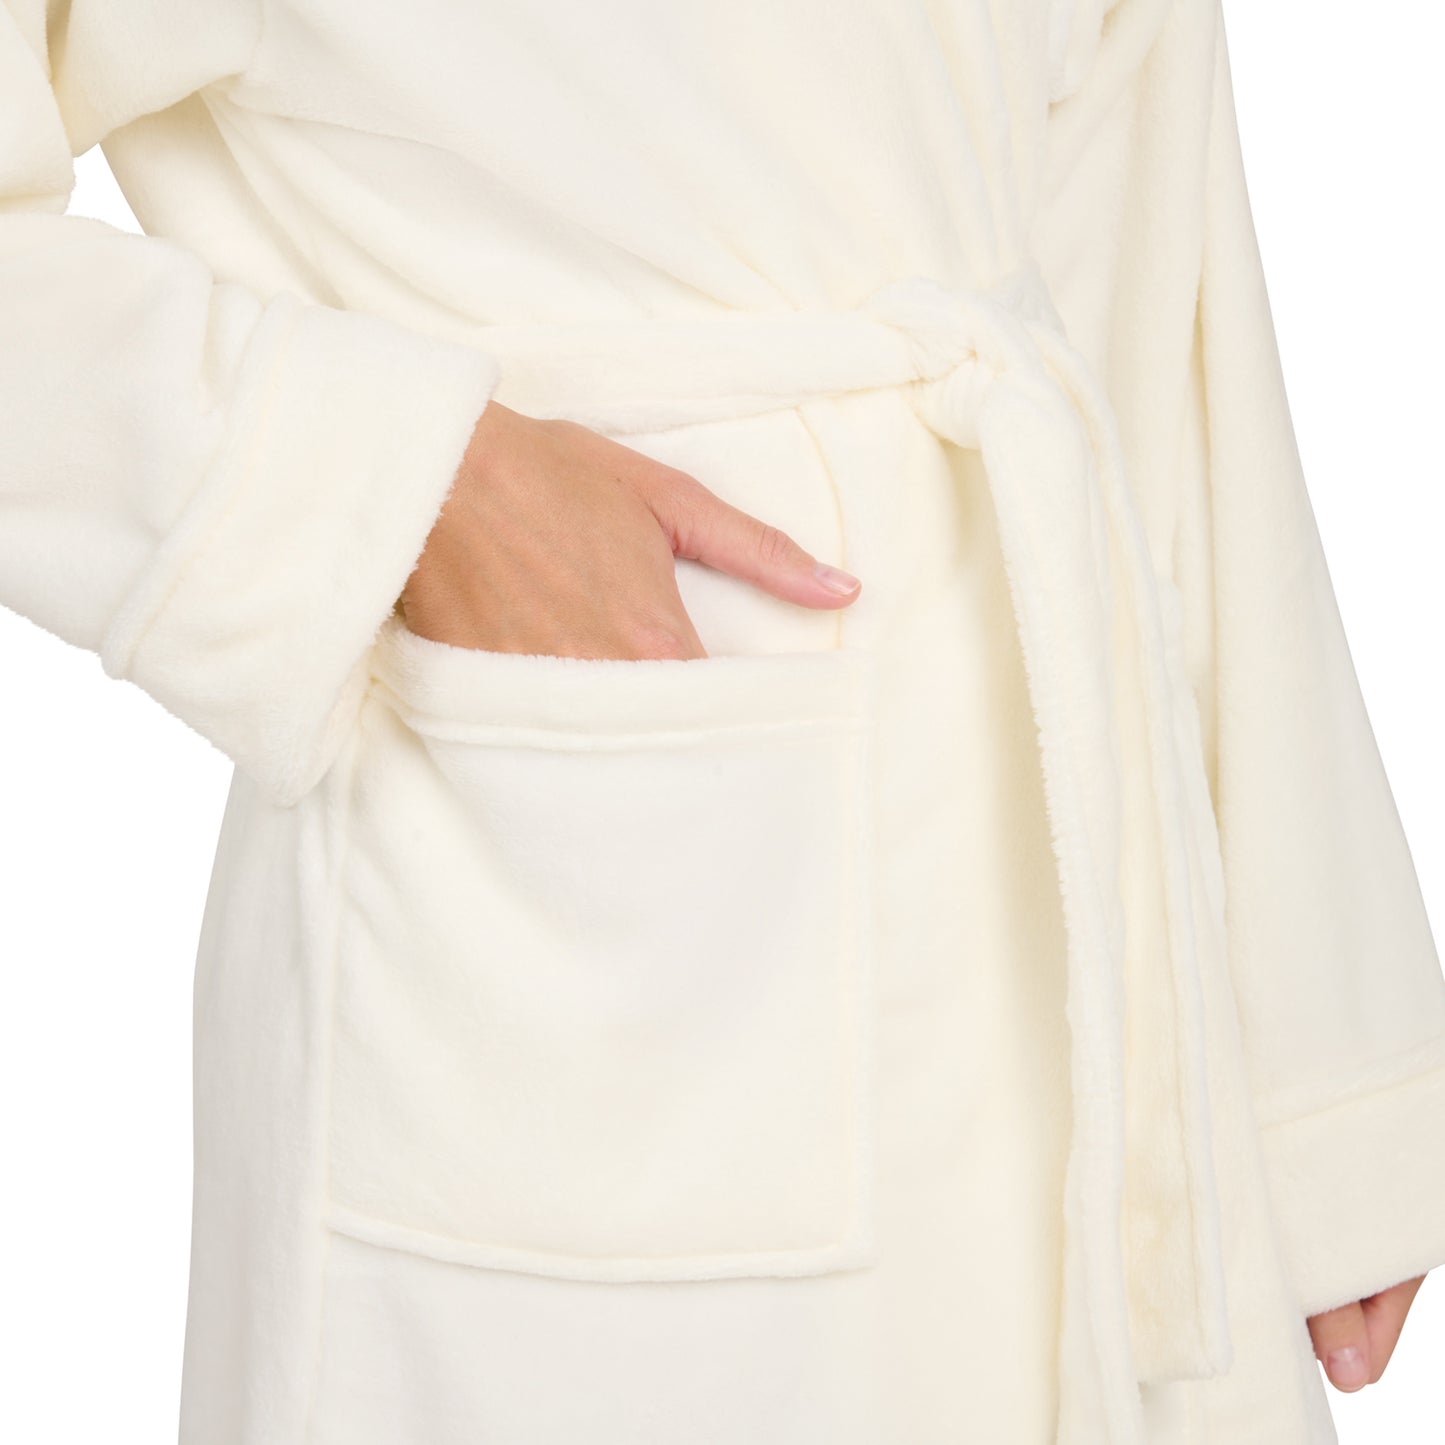 Detailansicht der Tasche eines Fleece-Bademantels in die eine Hand eingesteckt ist isoliert auf weißem Hintergrund.